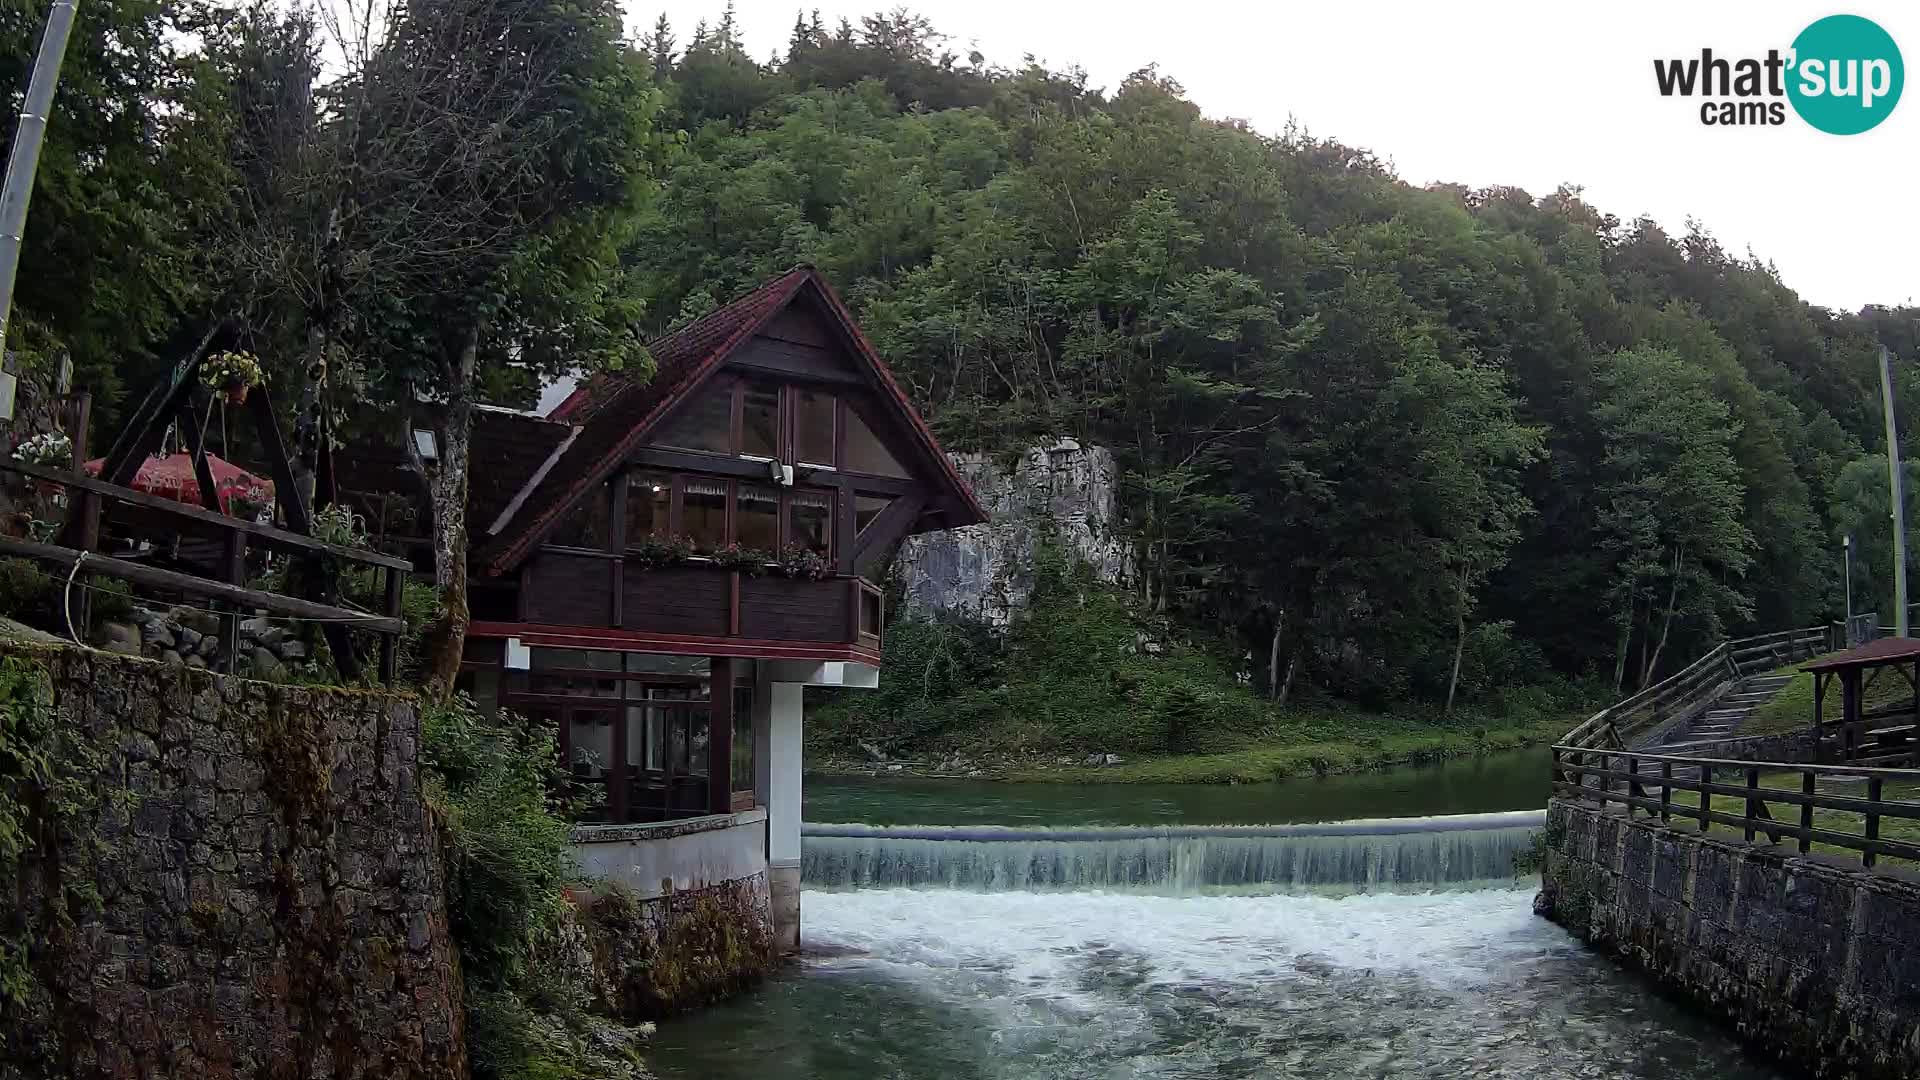 Camera en vivo Cañón Kamačnik – Vrbovsko – Croacia